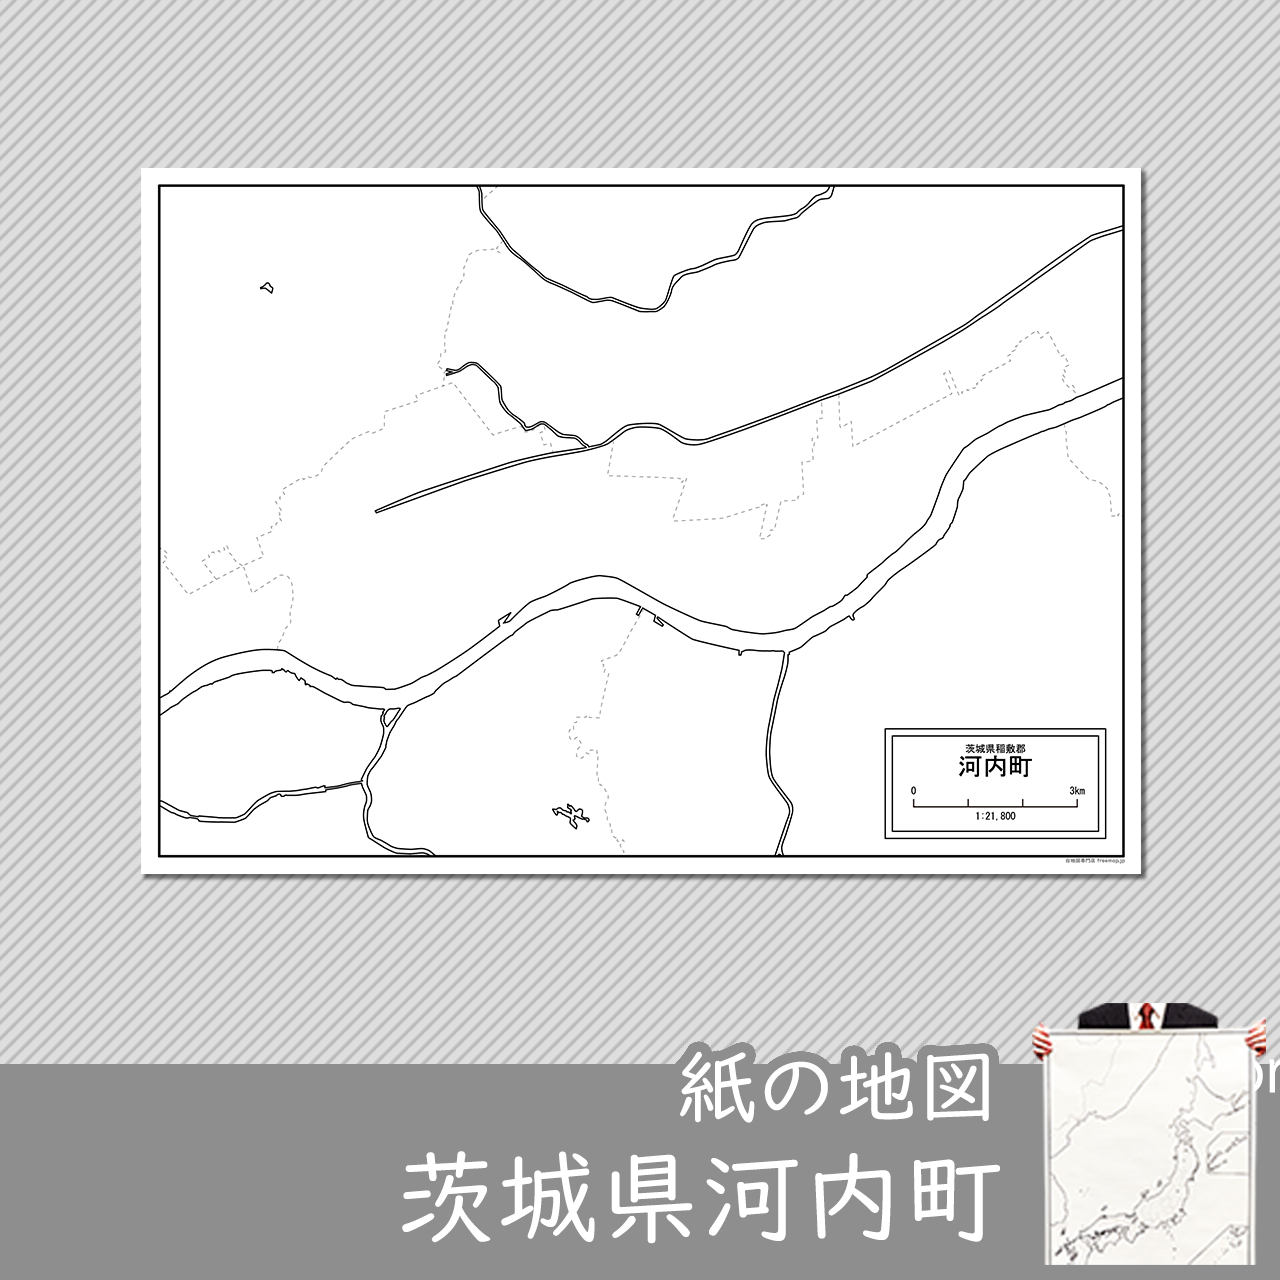 河内町の紙の白地図のサムネイル